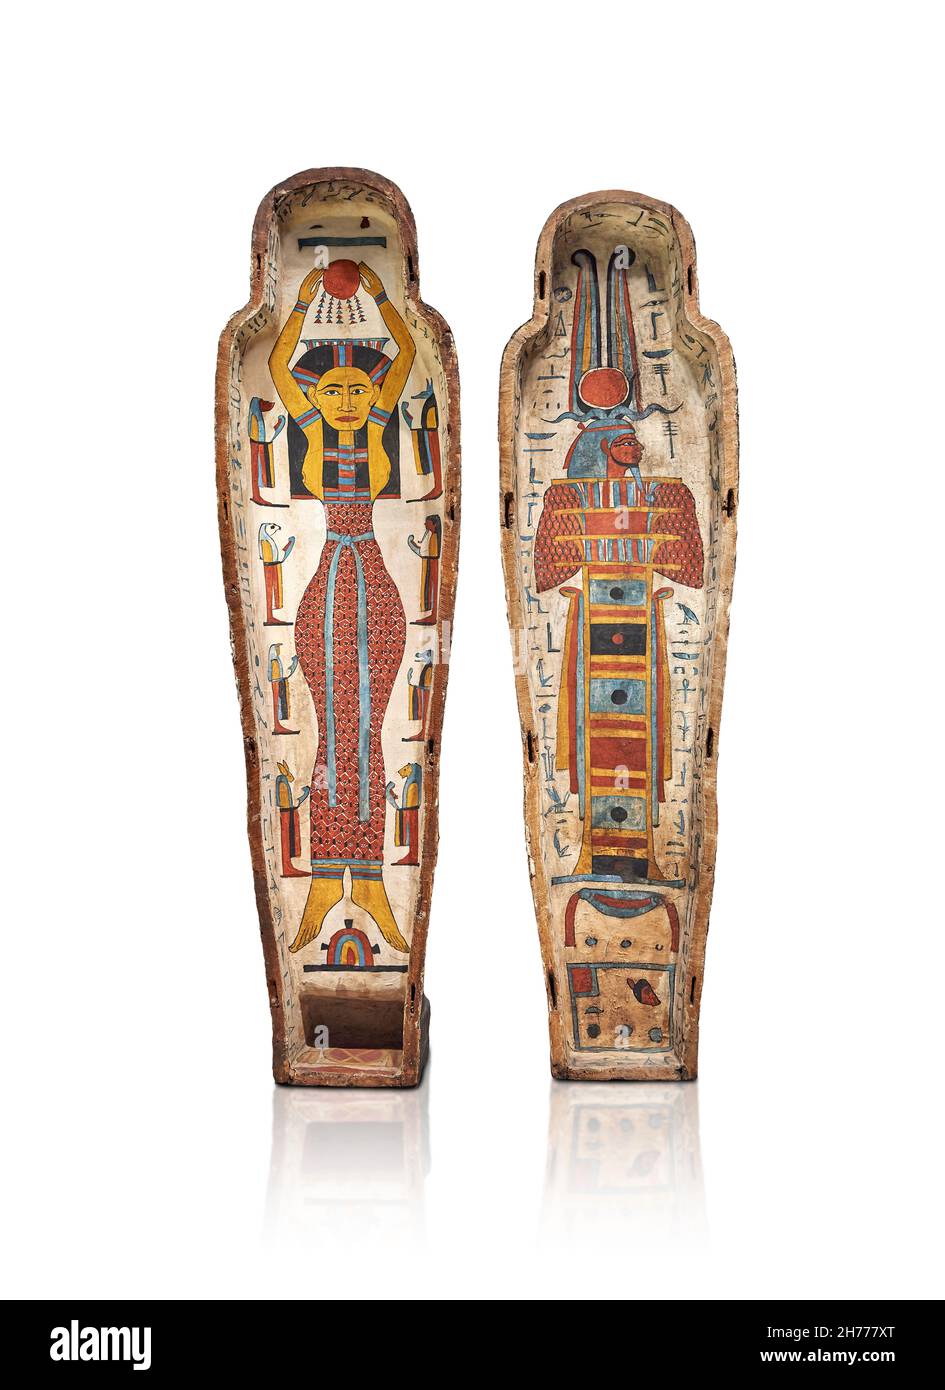 Ancien cas de momie égyptienne d'Isetemakhbit, 760-526 av. J.-C., 26e dynastie, Thèbes.Musée des Beaux-Arts de Lyon Inv 1969-197 (Louvre n° E 13032).Momifor Banque D'Images